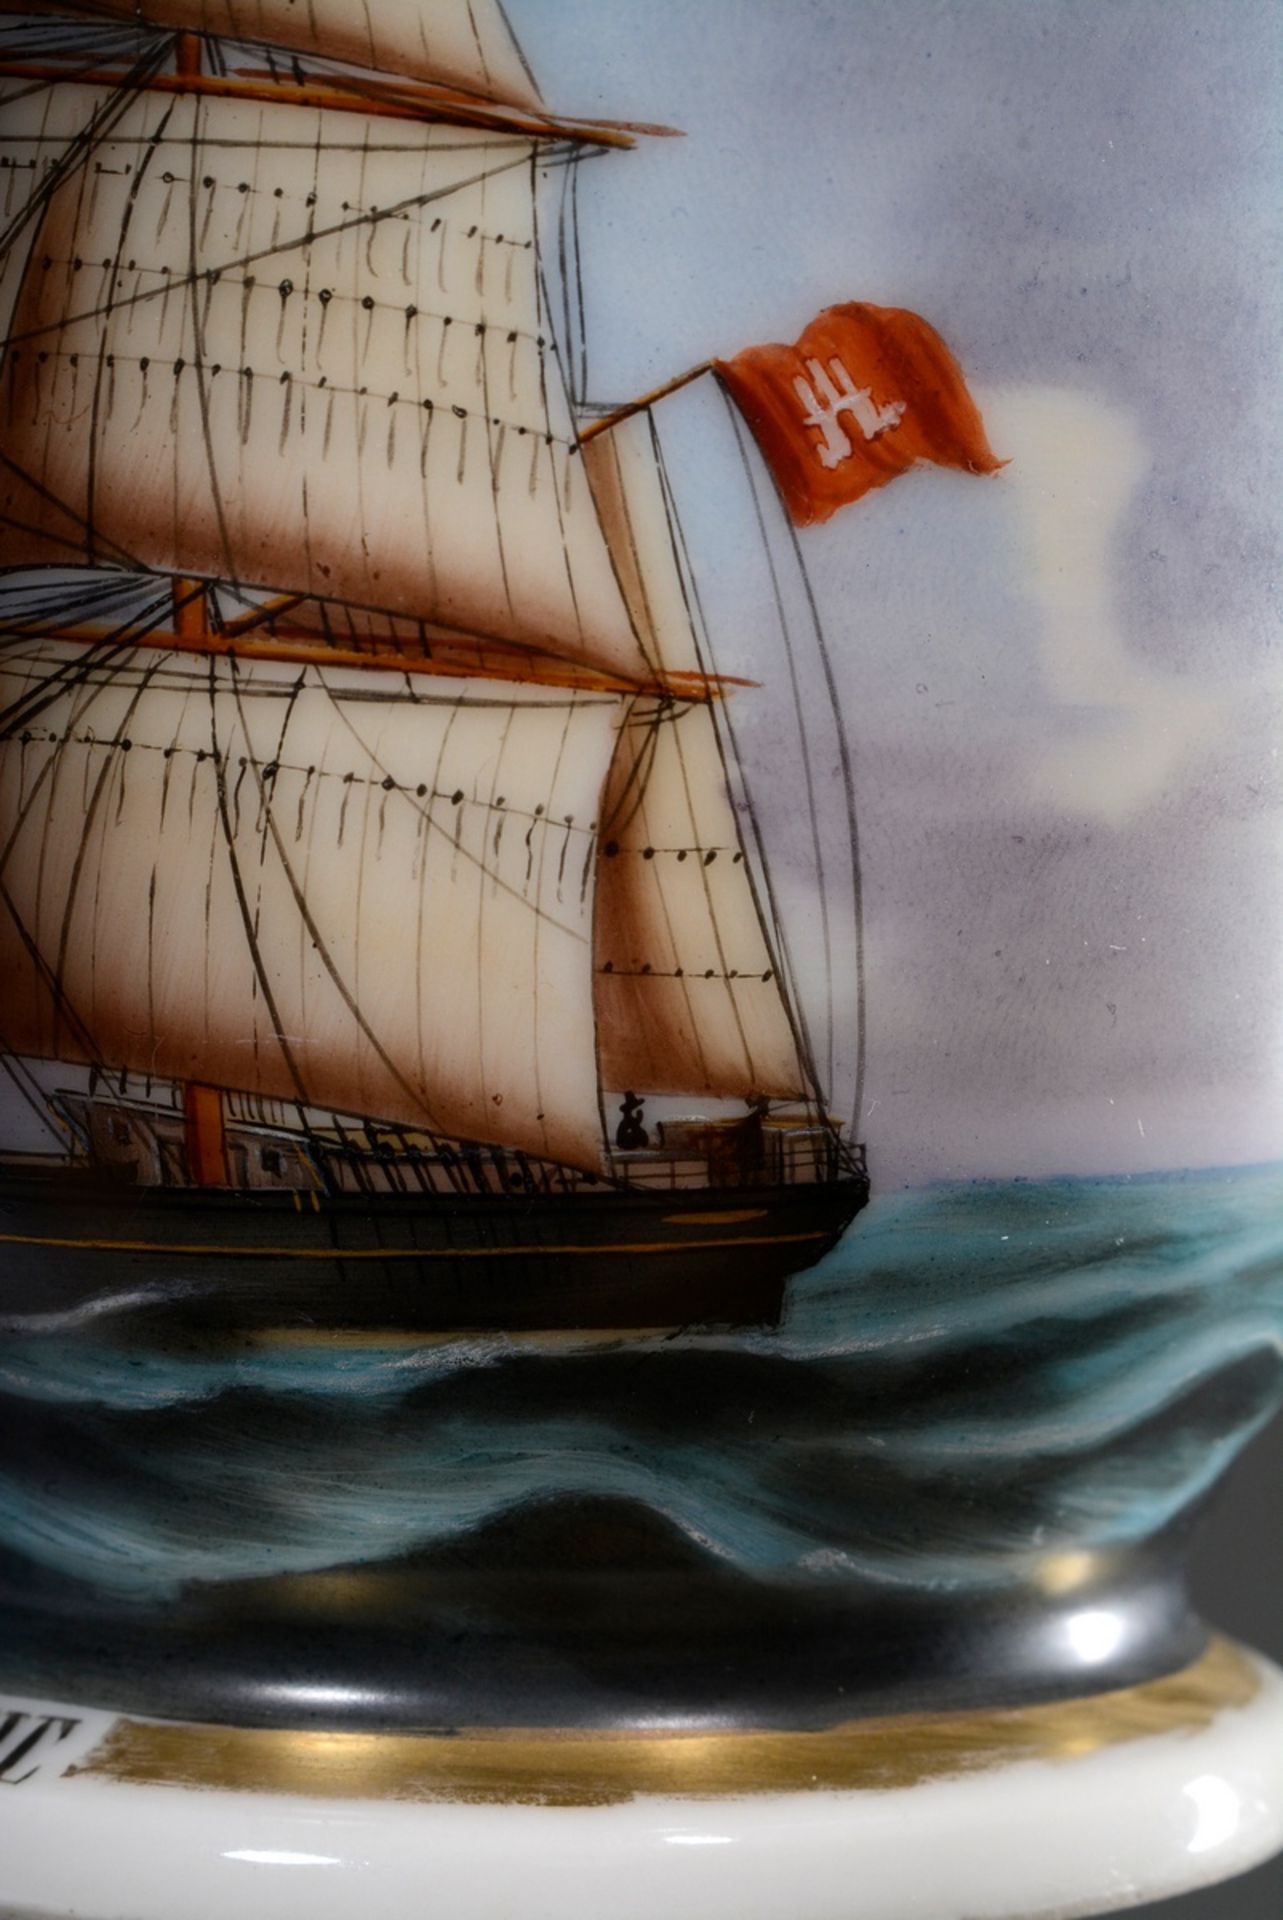 Captain's cup/UT: Brigg "Pacific", built by Schau & Oltmanns/Geestemünde 1860, captains: T. Fedders - Image 5 of 7